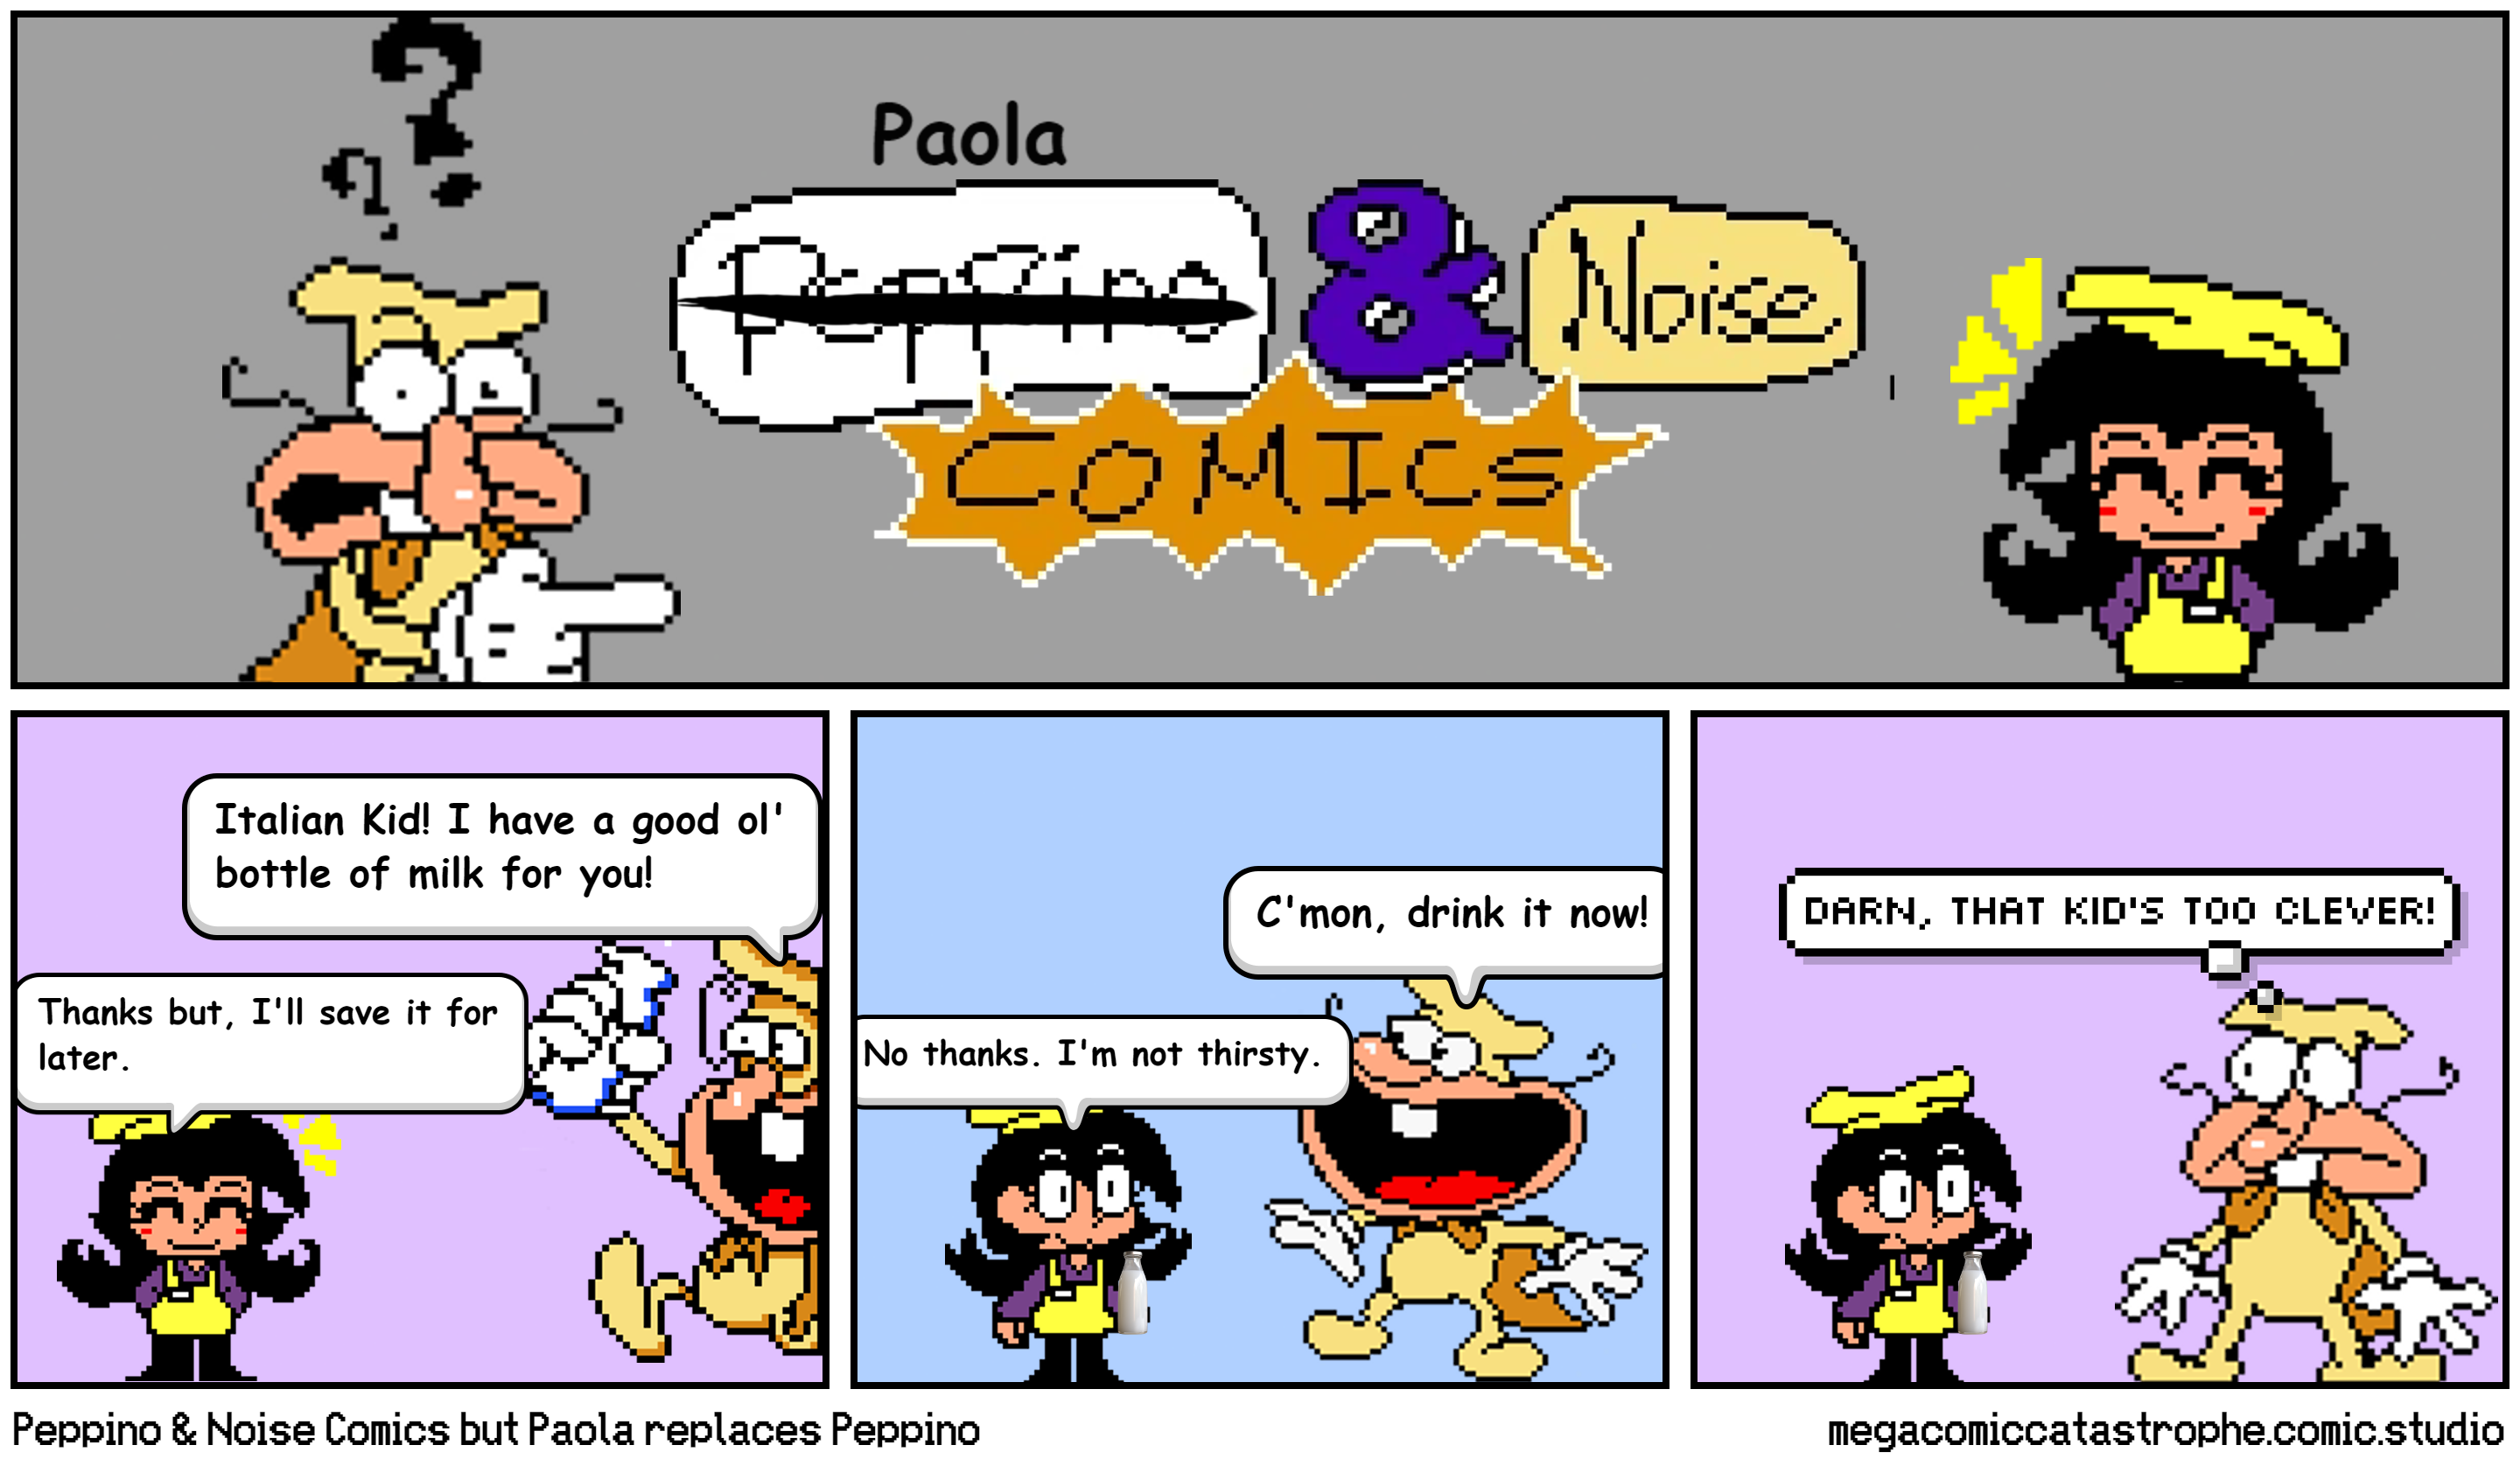 Peppino & Noise Comics but Paola replaces Peppino